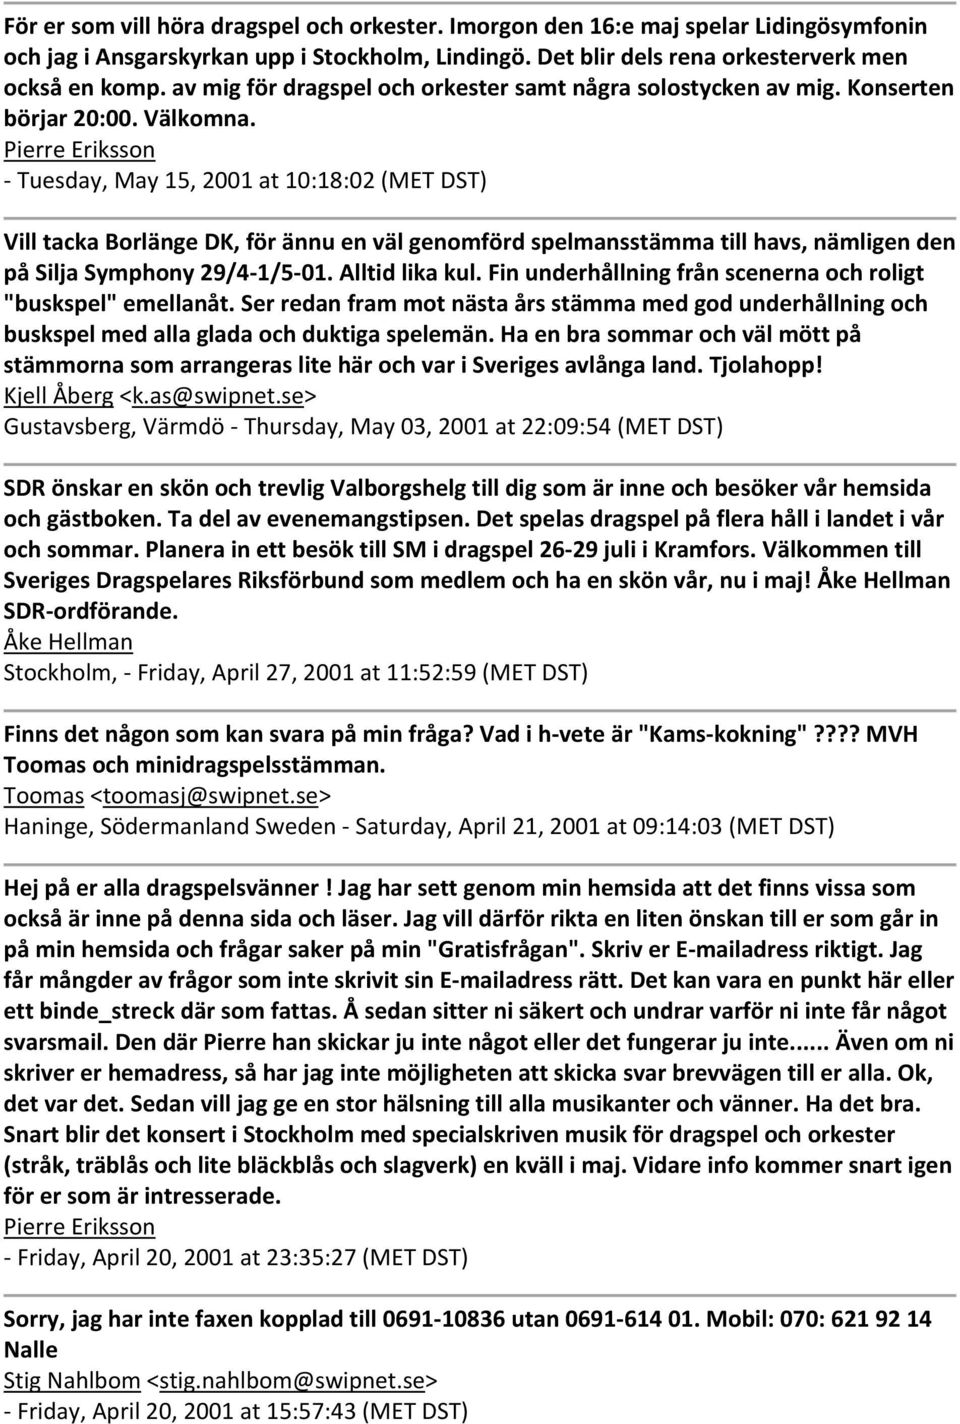 Pierre Eriksson Tuesday, May 15, 2001 at 10:18:02 (MET DST) Vill tacka Borlänge DK, för ännu en väl genomförd spelmansstämma till havs, nämligen den på Silja Symphony 29/4 1/5 01. Alltid lika kul.